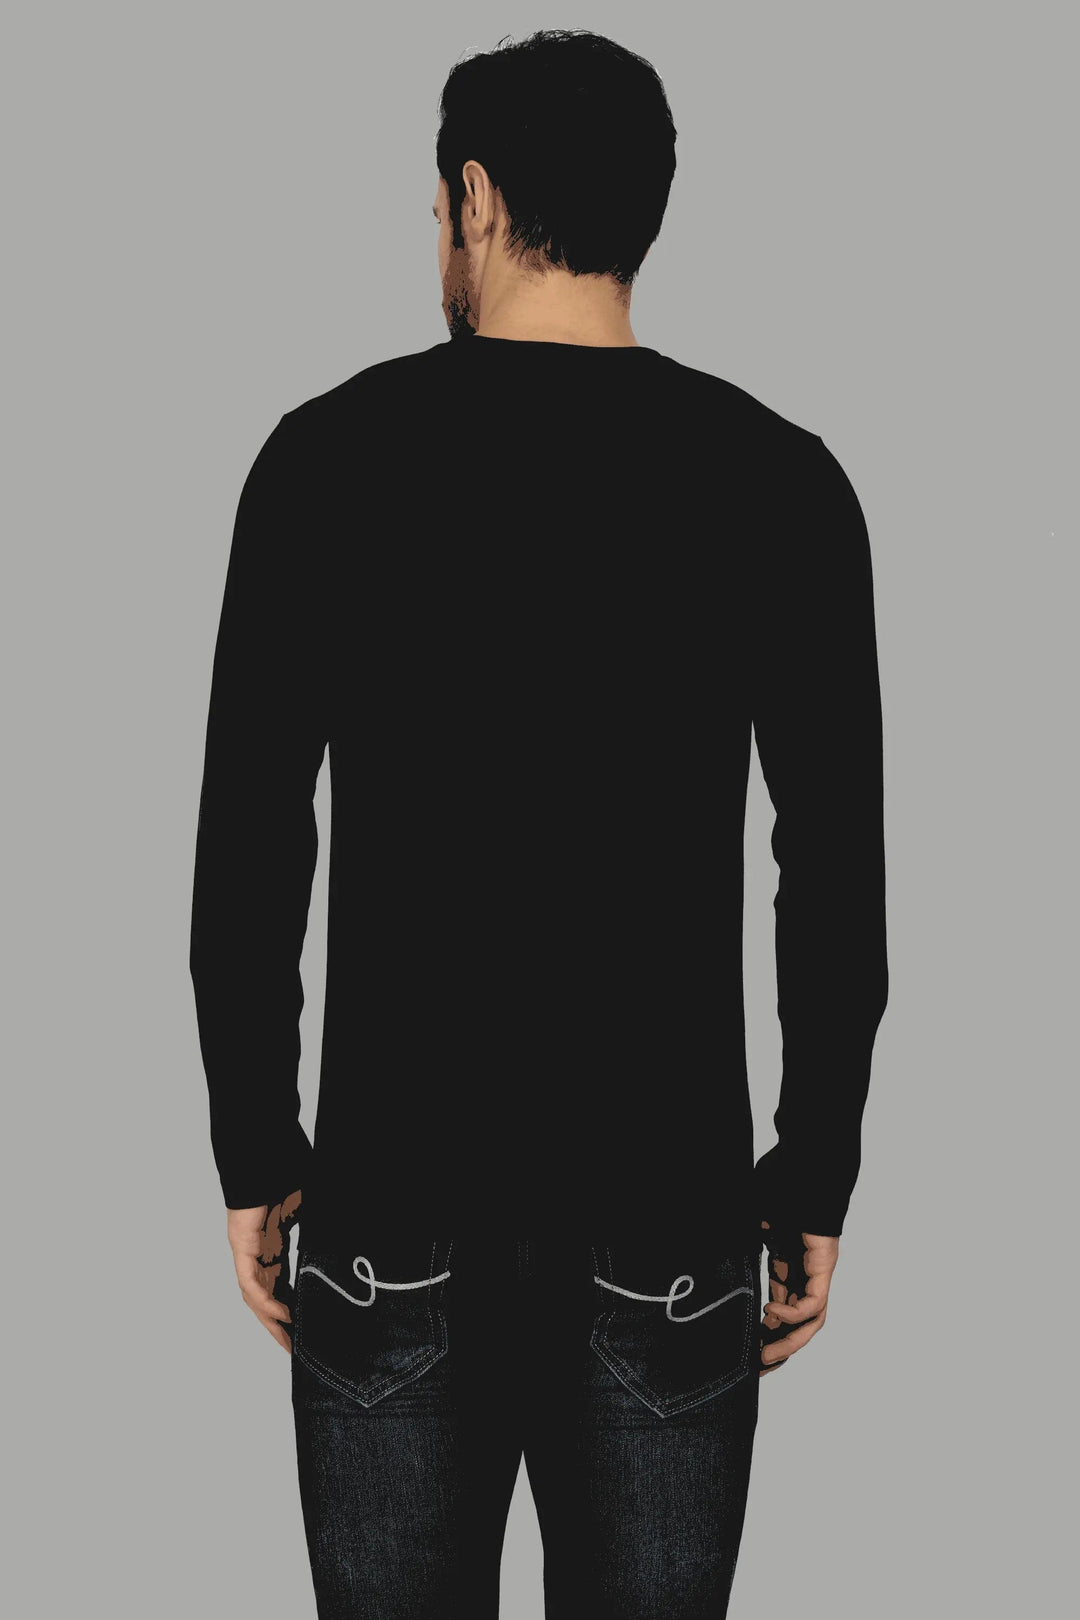 Full Sleeve Black Round Neck T-Shirt For Men - Peplos Jeans 